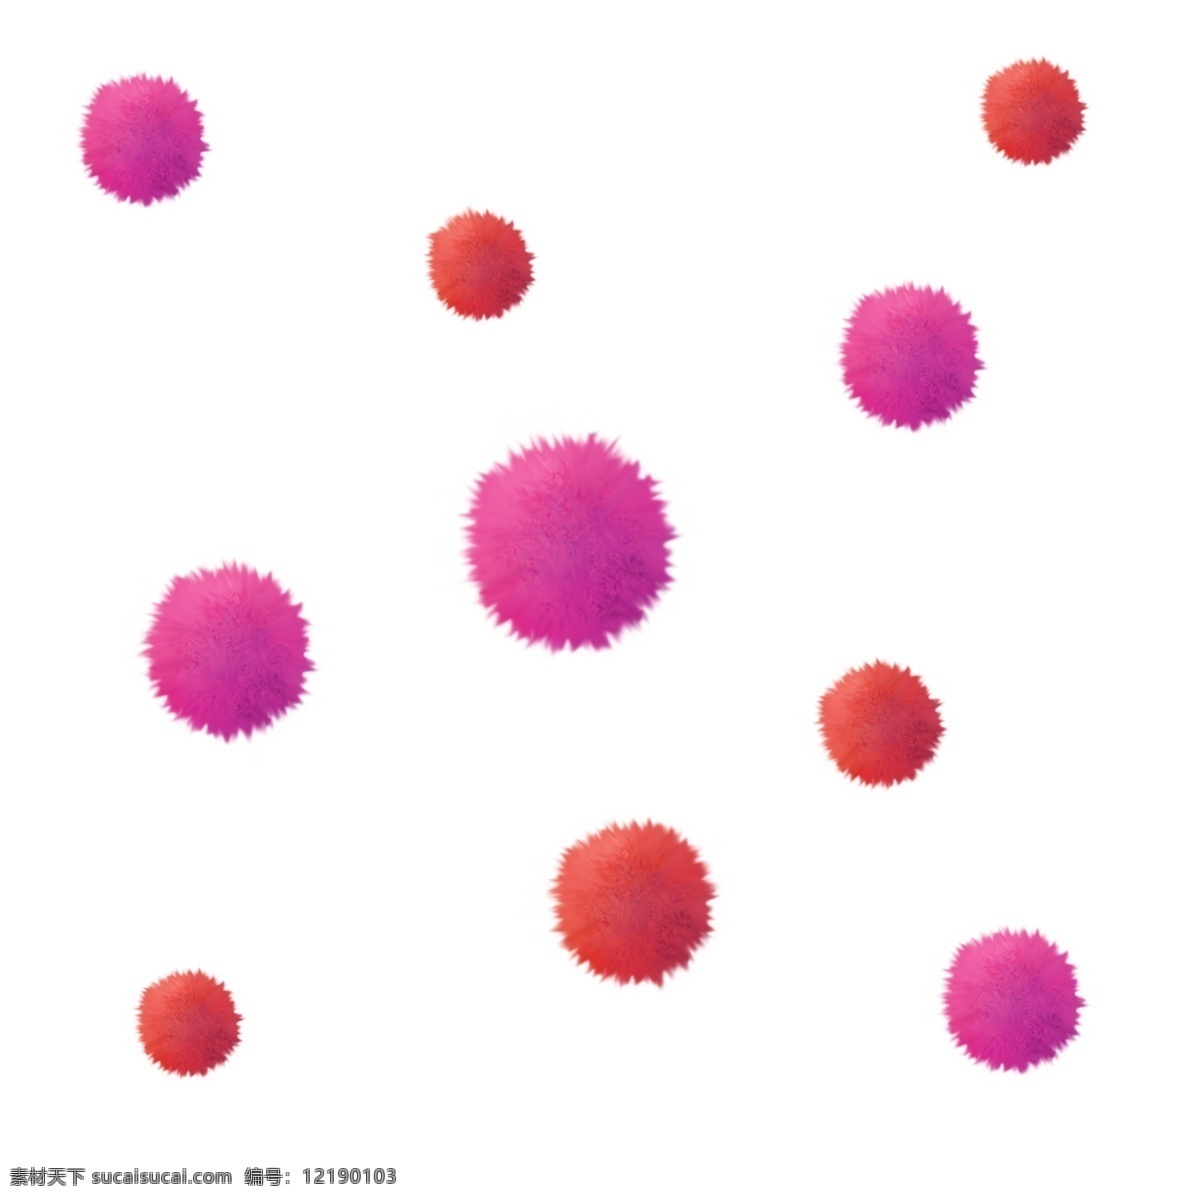 促销 可爱 毛线 绒毛 小球 点缀 毛球 微生物 粉色 漂浮 装饰 橙色 时尚 别致 手绘 空间